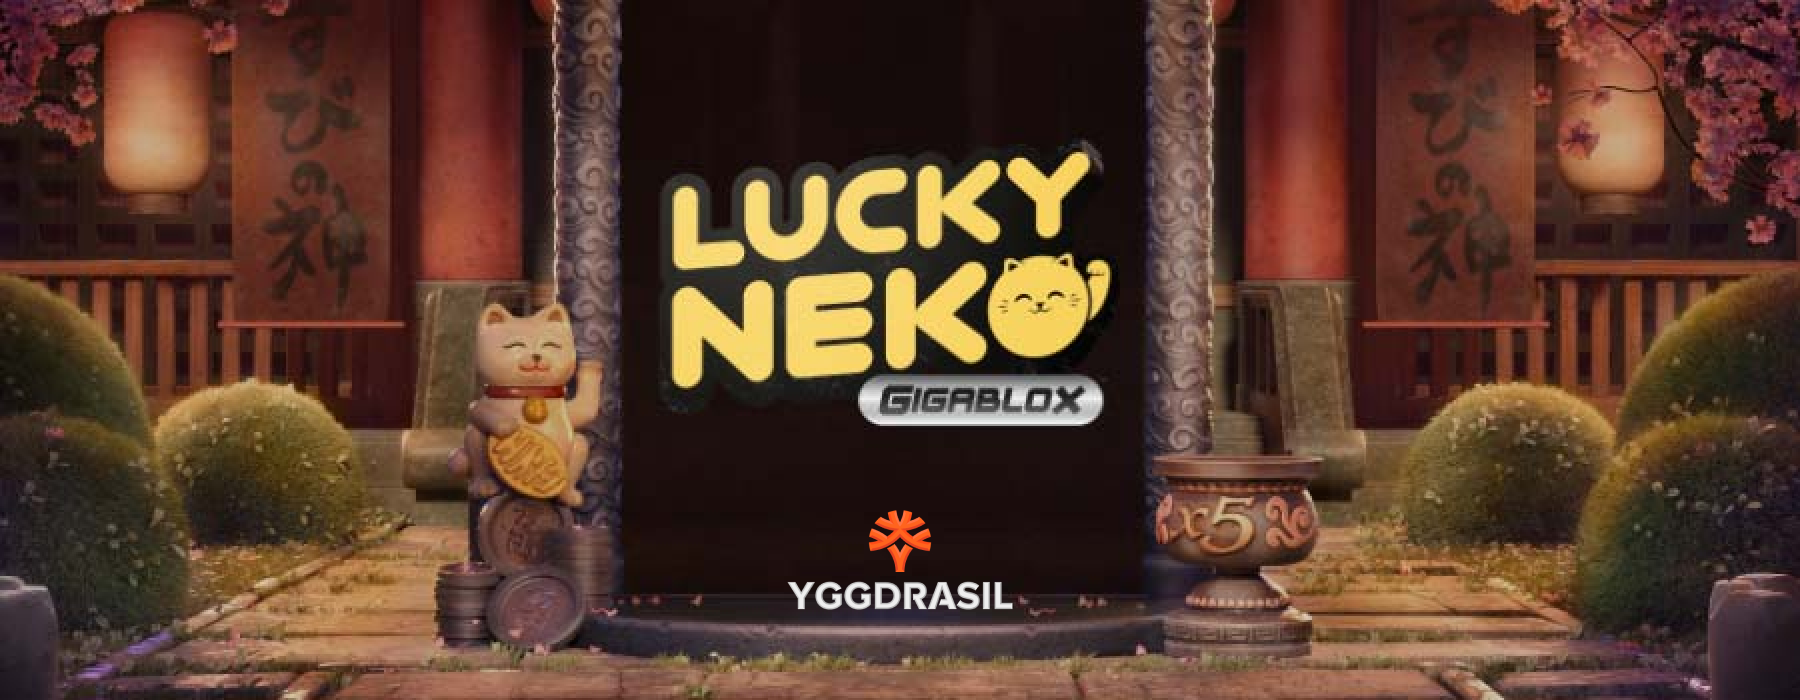 Lucky Neko Gigablox गुणा Yggdrasil